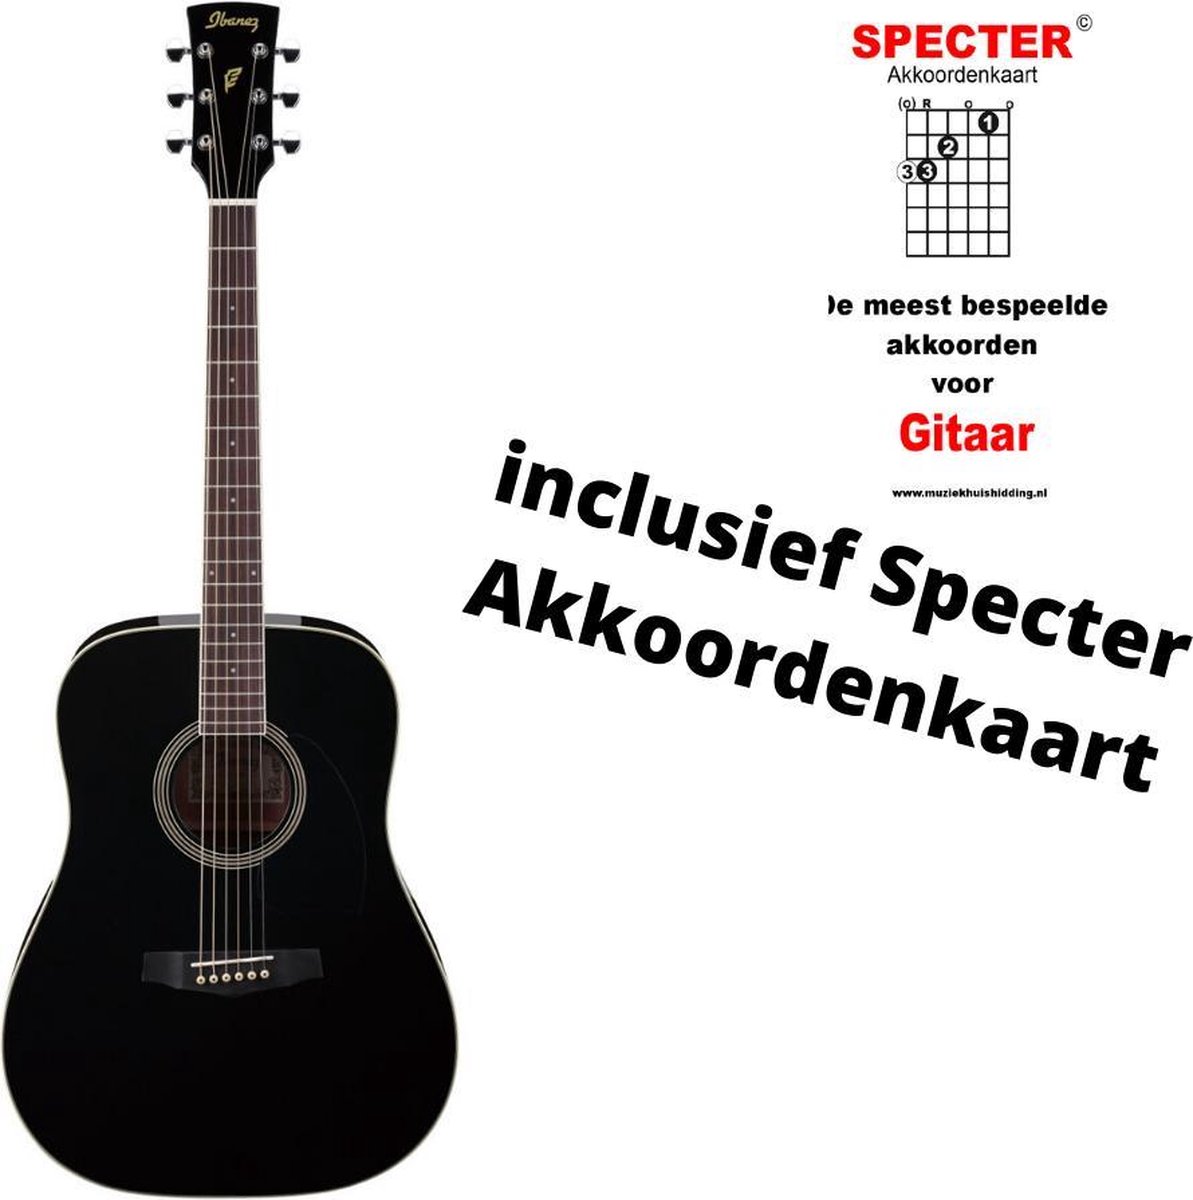 Ibanez akoestische zwarte gitaar met handige akkoordenkaart